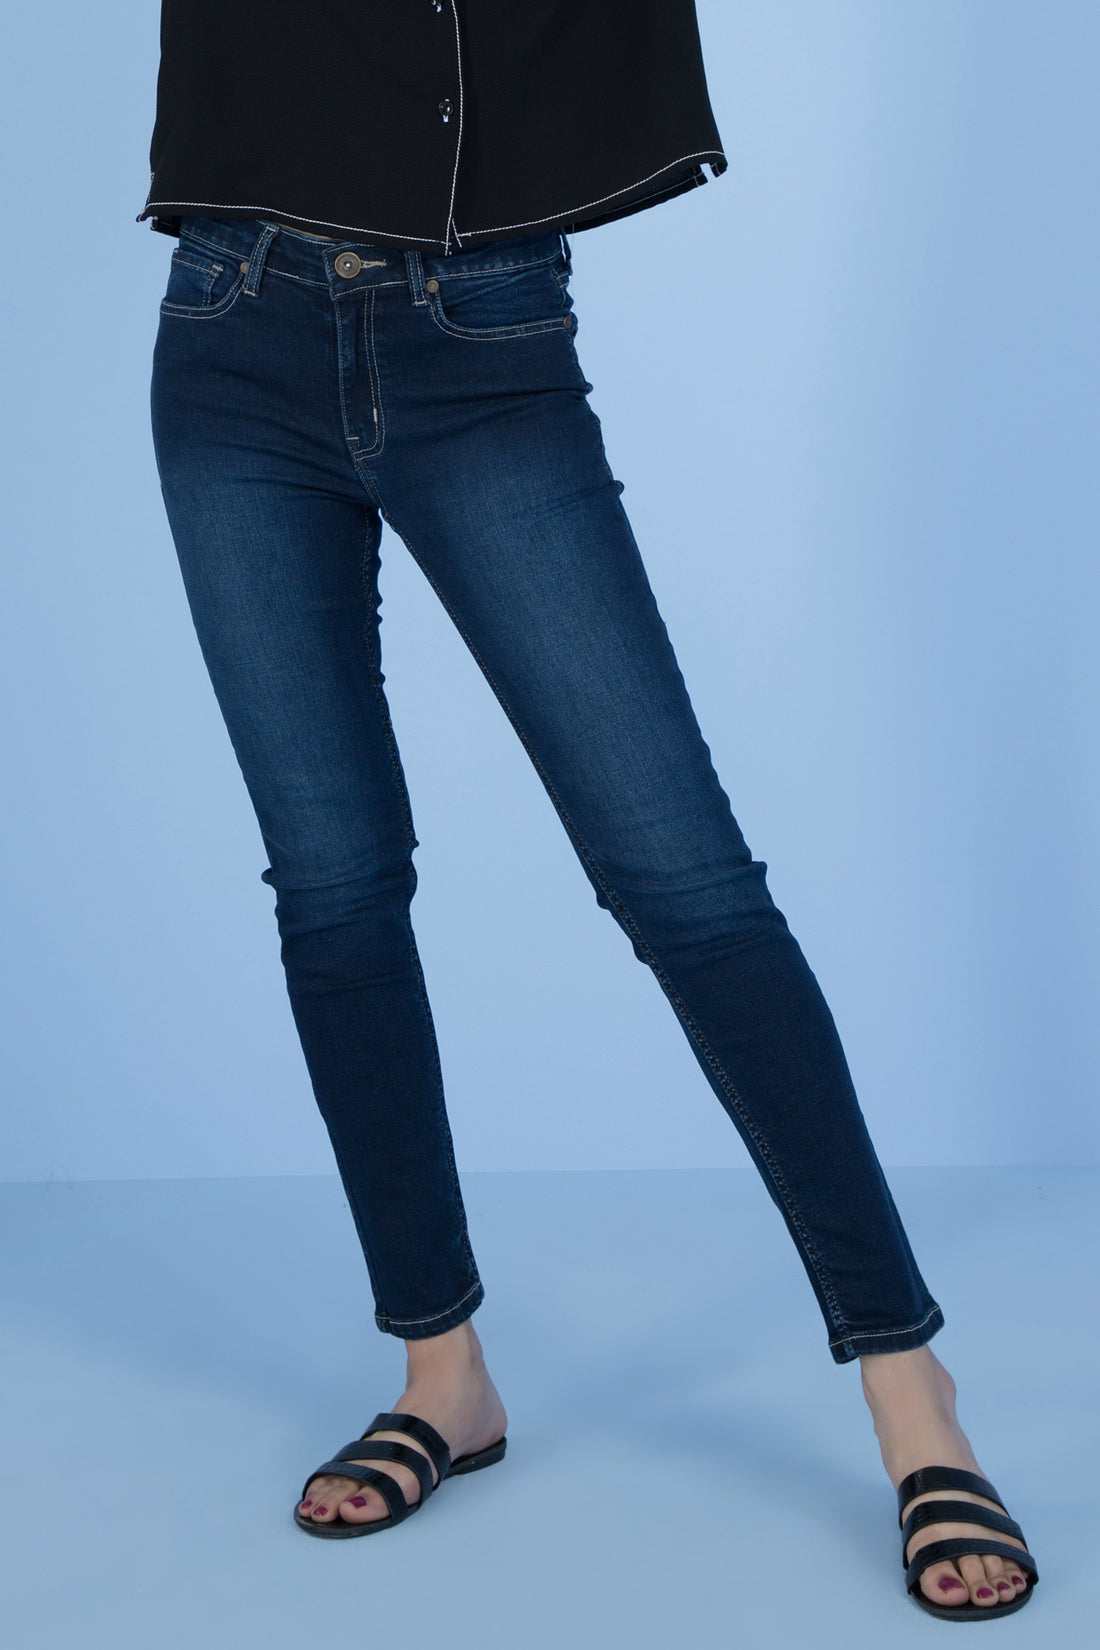 Valerie Skinny Jeans